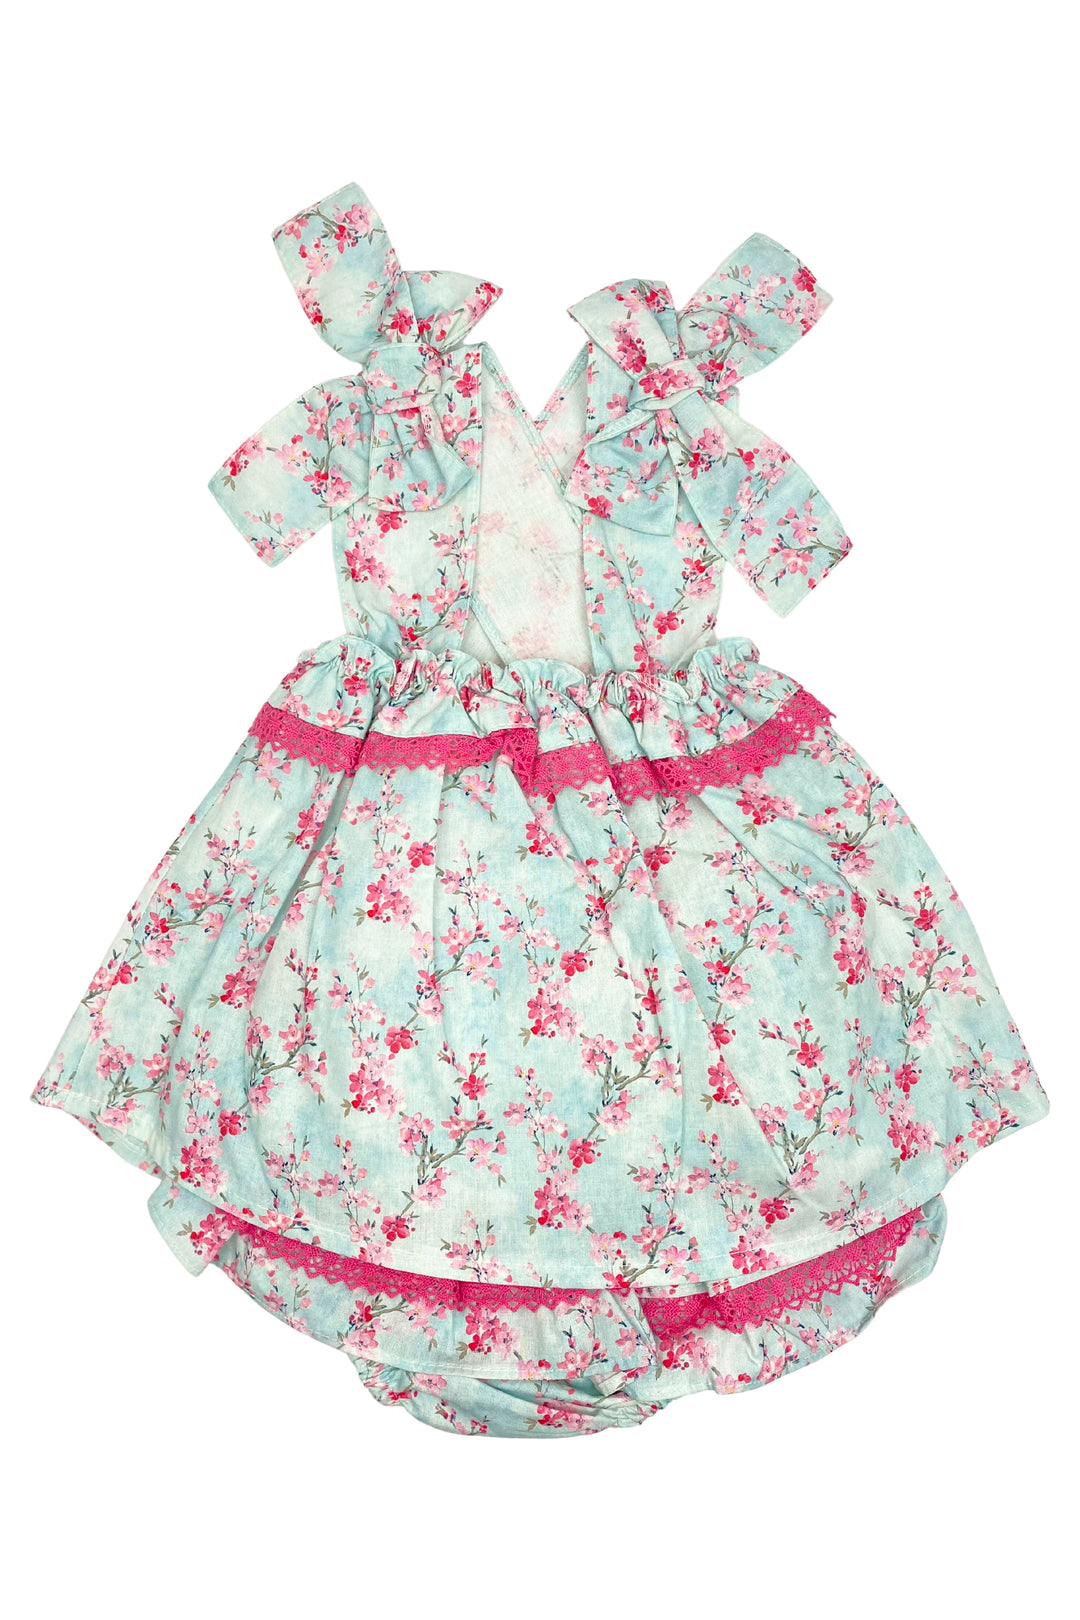 Valentina Bebes "Ingrid" Blue & Pink Floral Blouse & Skirt | Millie and John